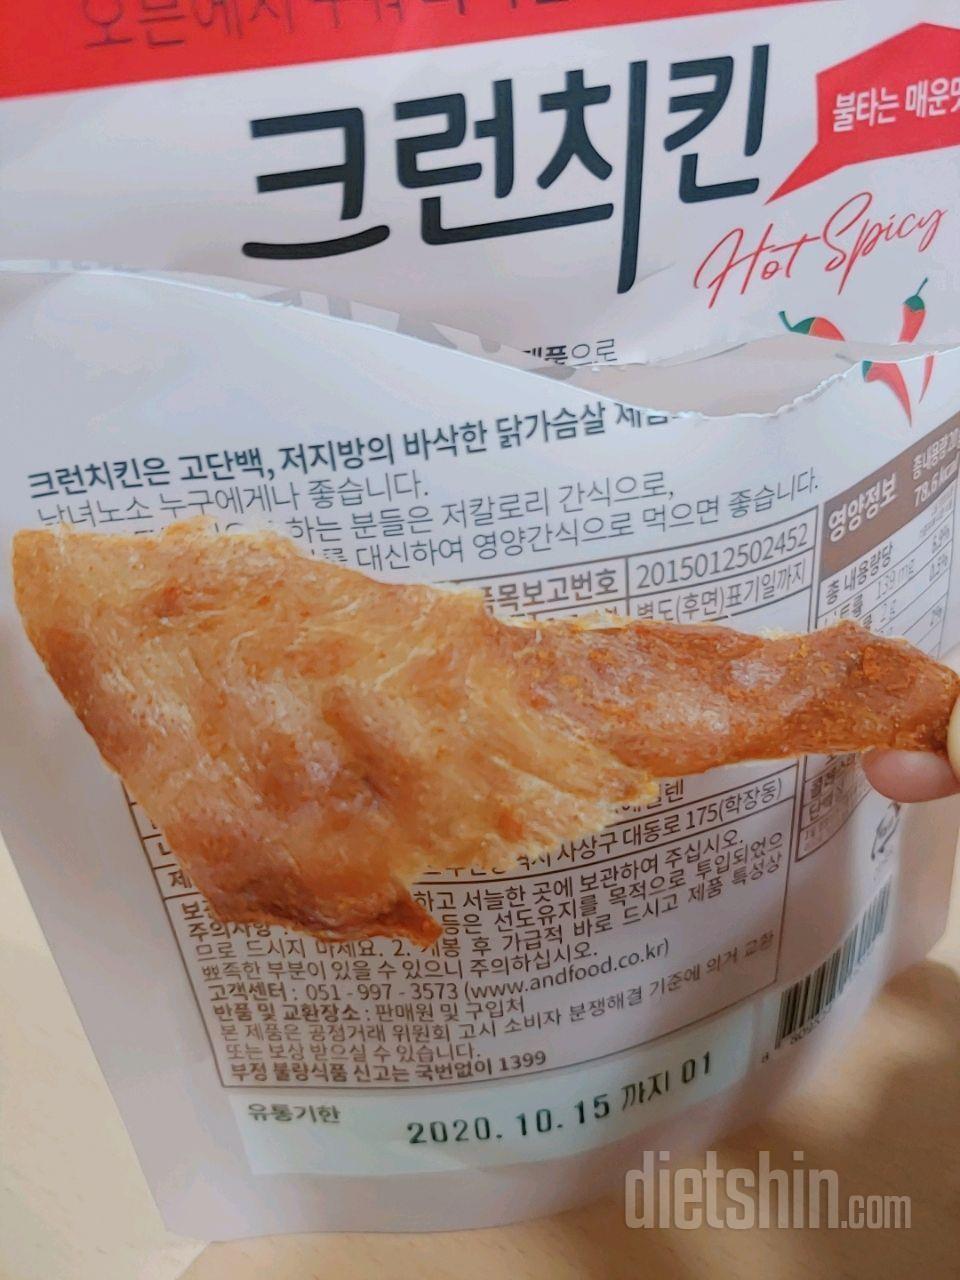 화끈한 파워단백질 간식그릇 만들기!! feat.크런치킨